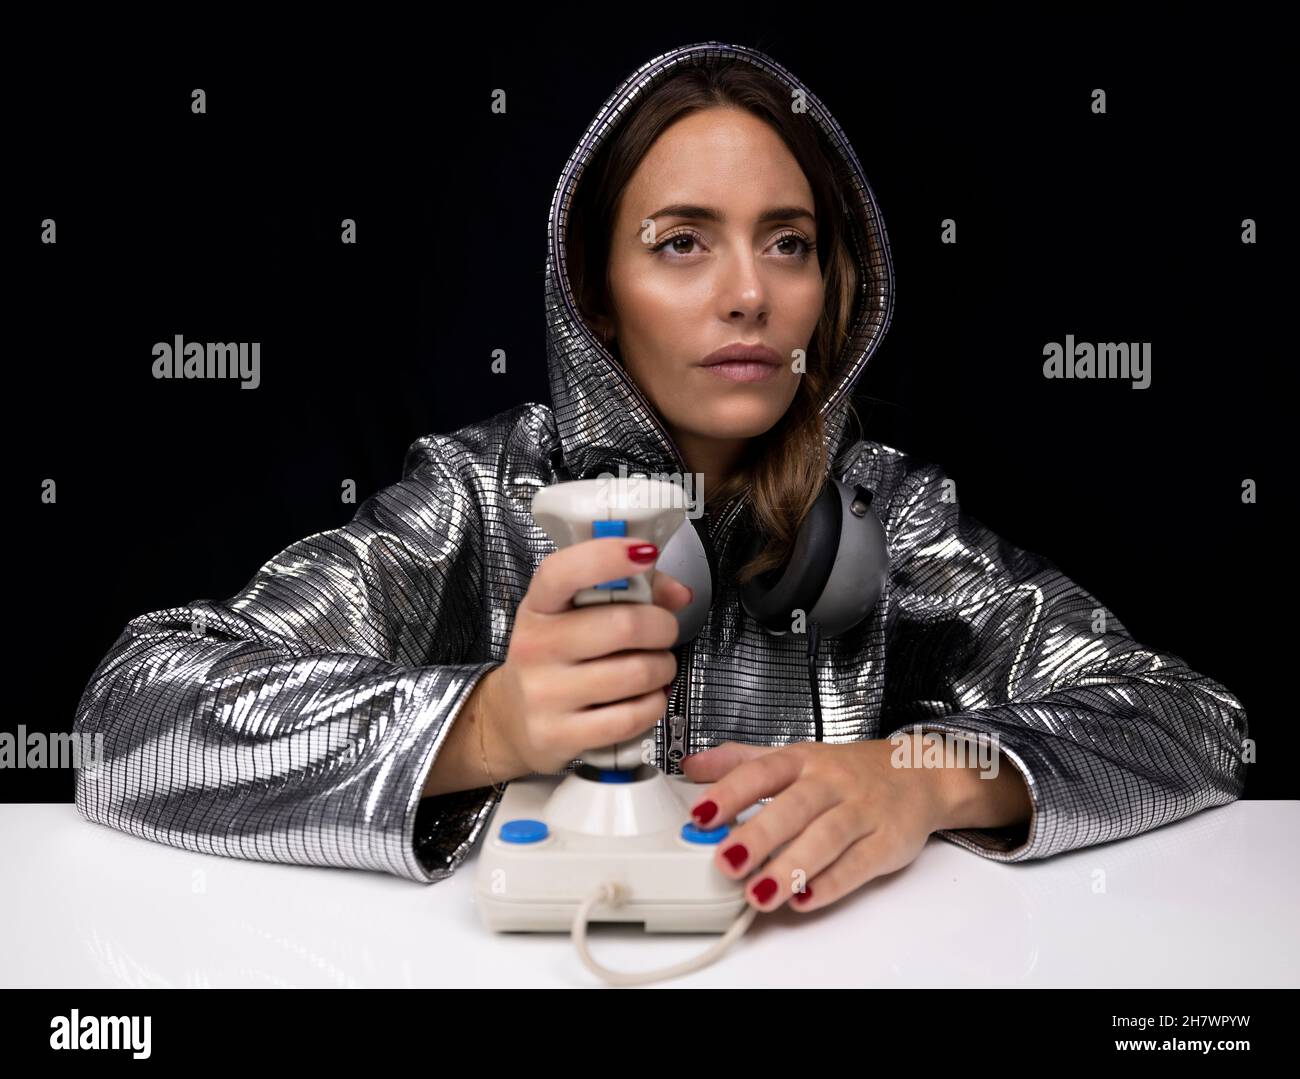 Mujer con traje de plata y joystick de ordenador Foto de stock